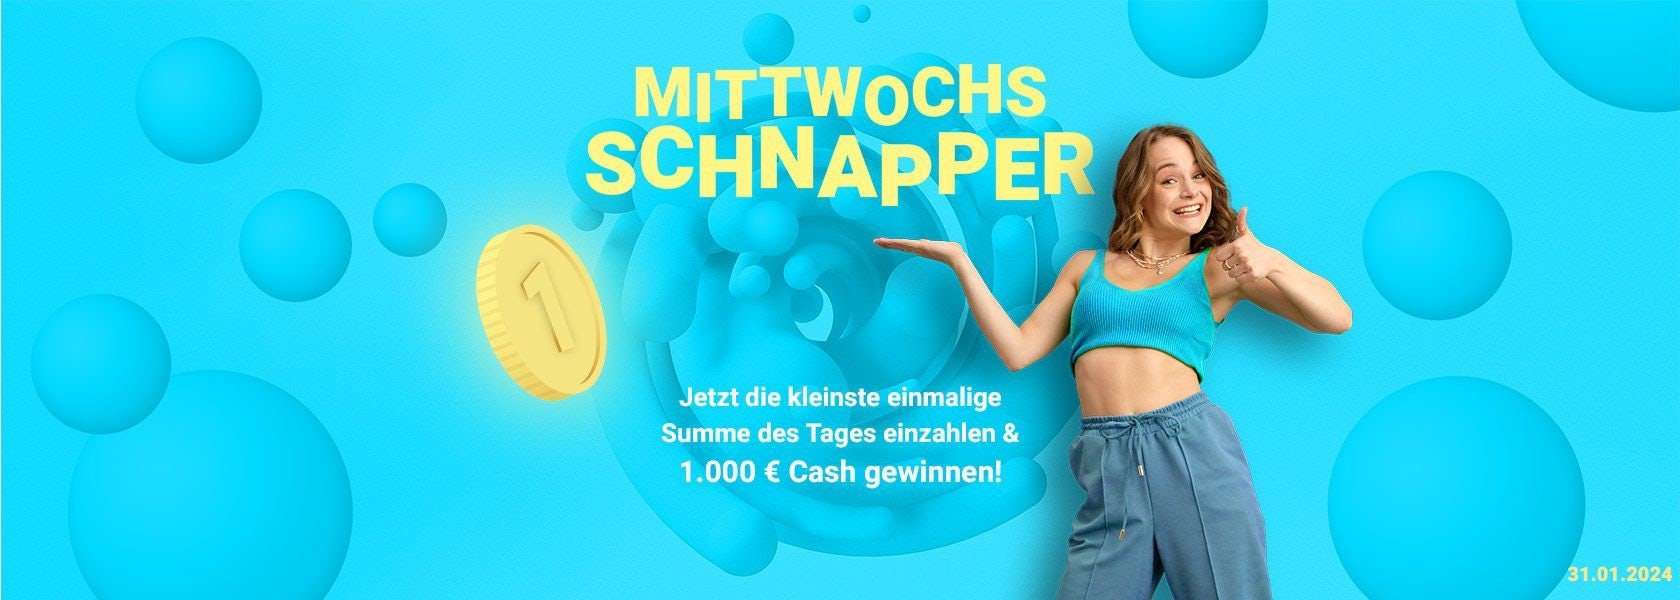 mittwochs-schnapper-bbo-31012024